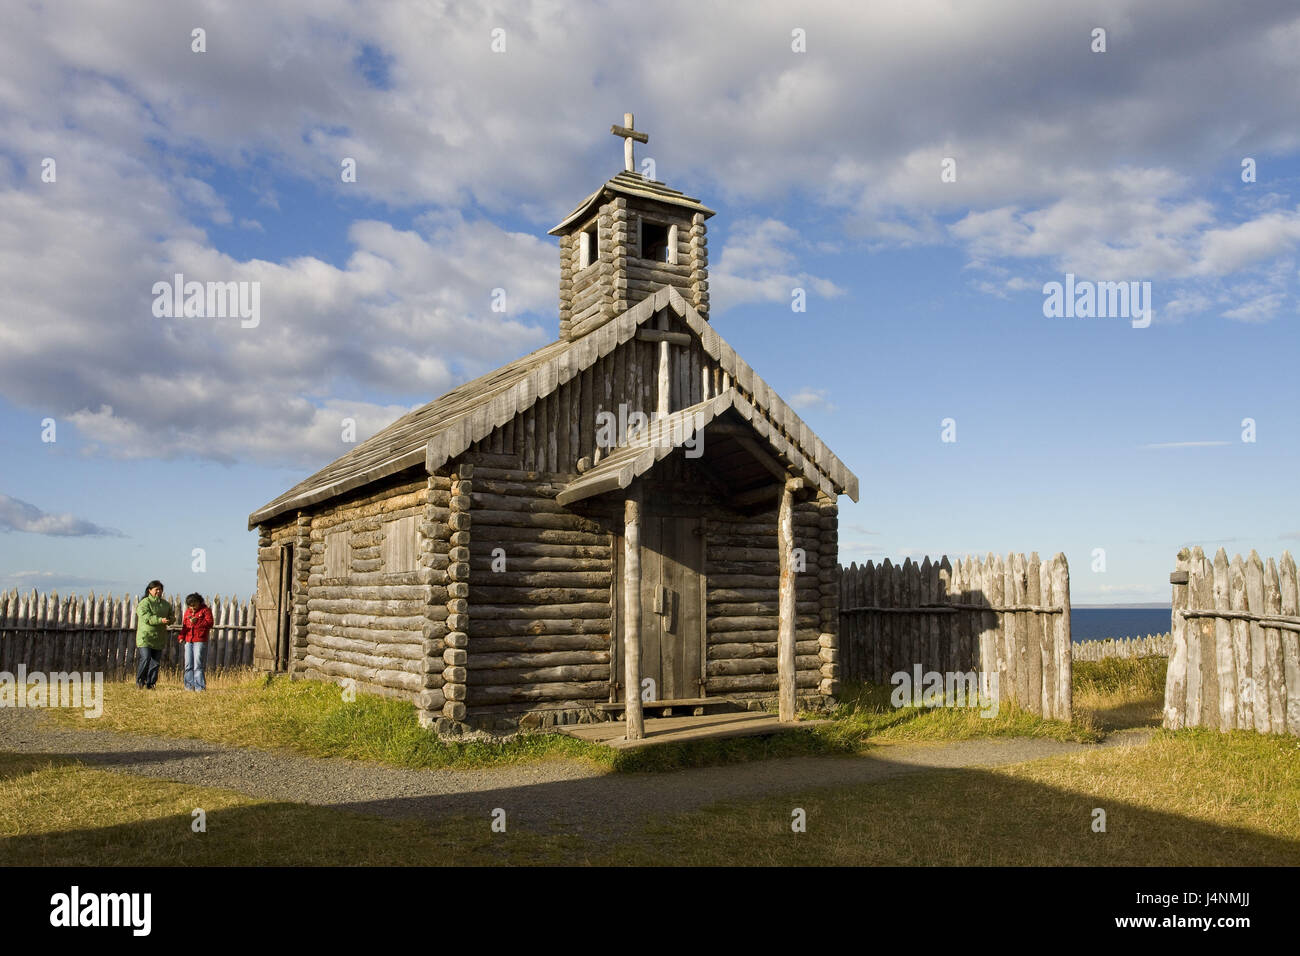 Chile, Patagonia, Punta Arenas, Fuerte Bulnes, wooden church, tourist, Stock Photo